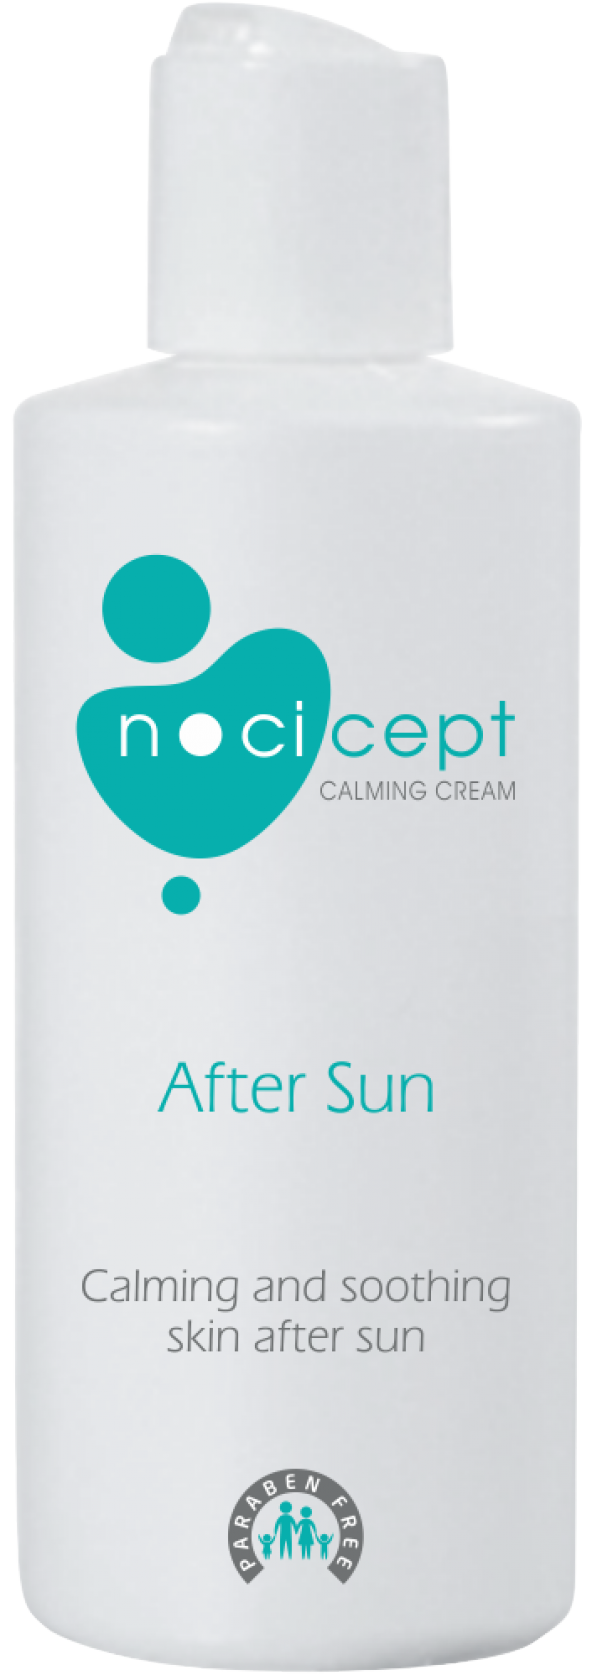 Nocicept After Sun Calming Cream_Güneş Sonrası Kremi (150 ml.)